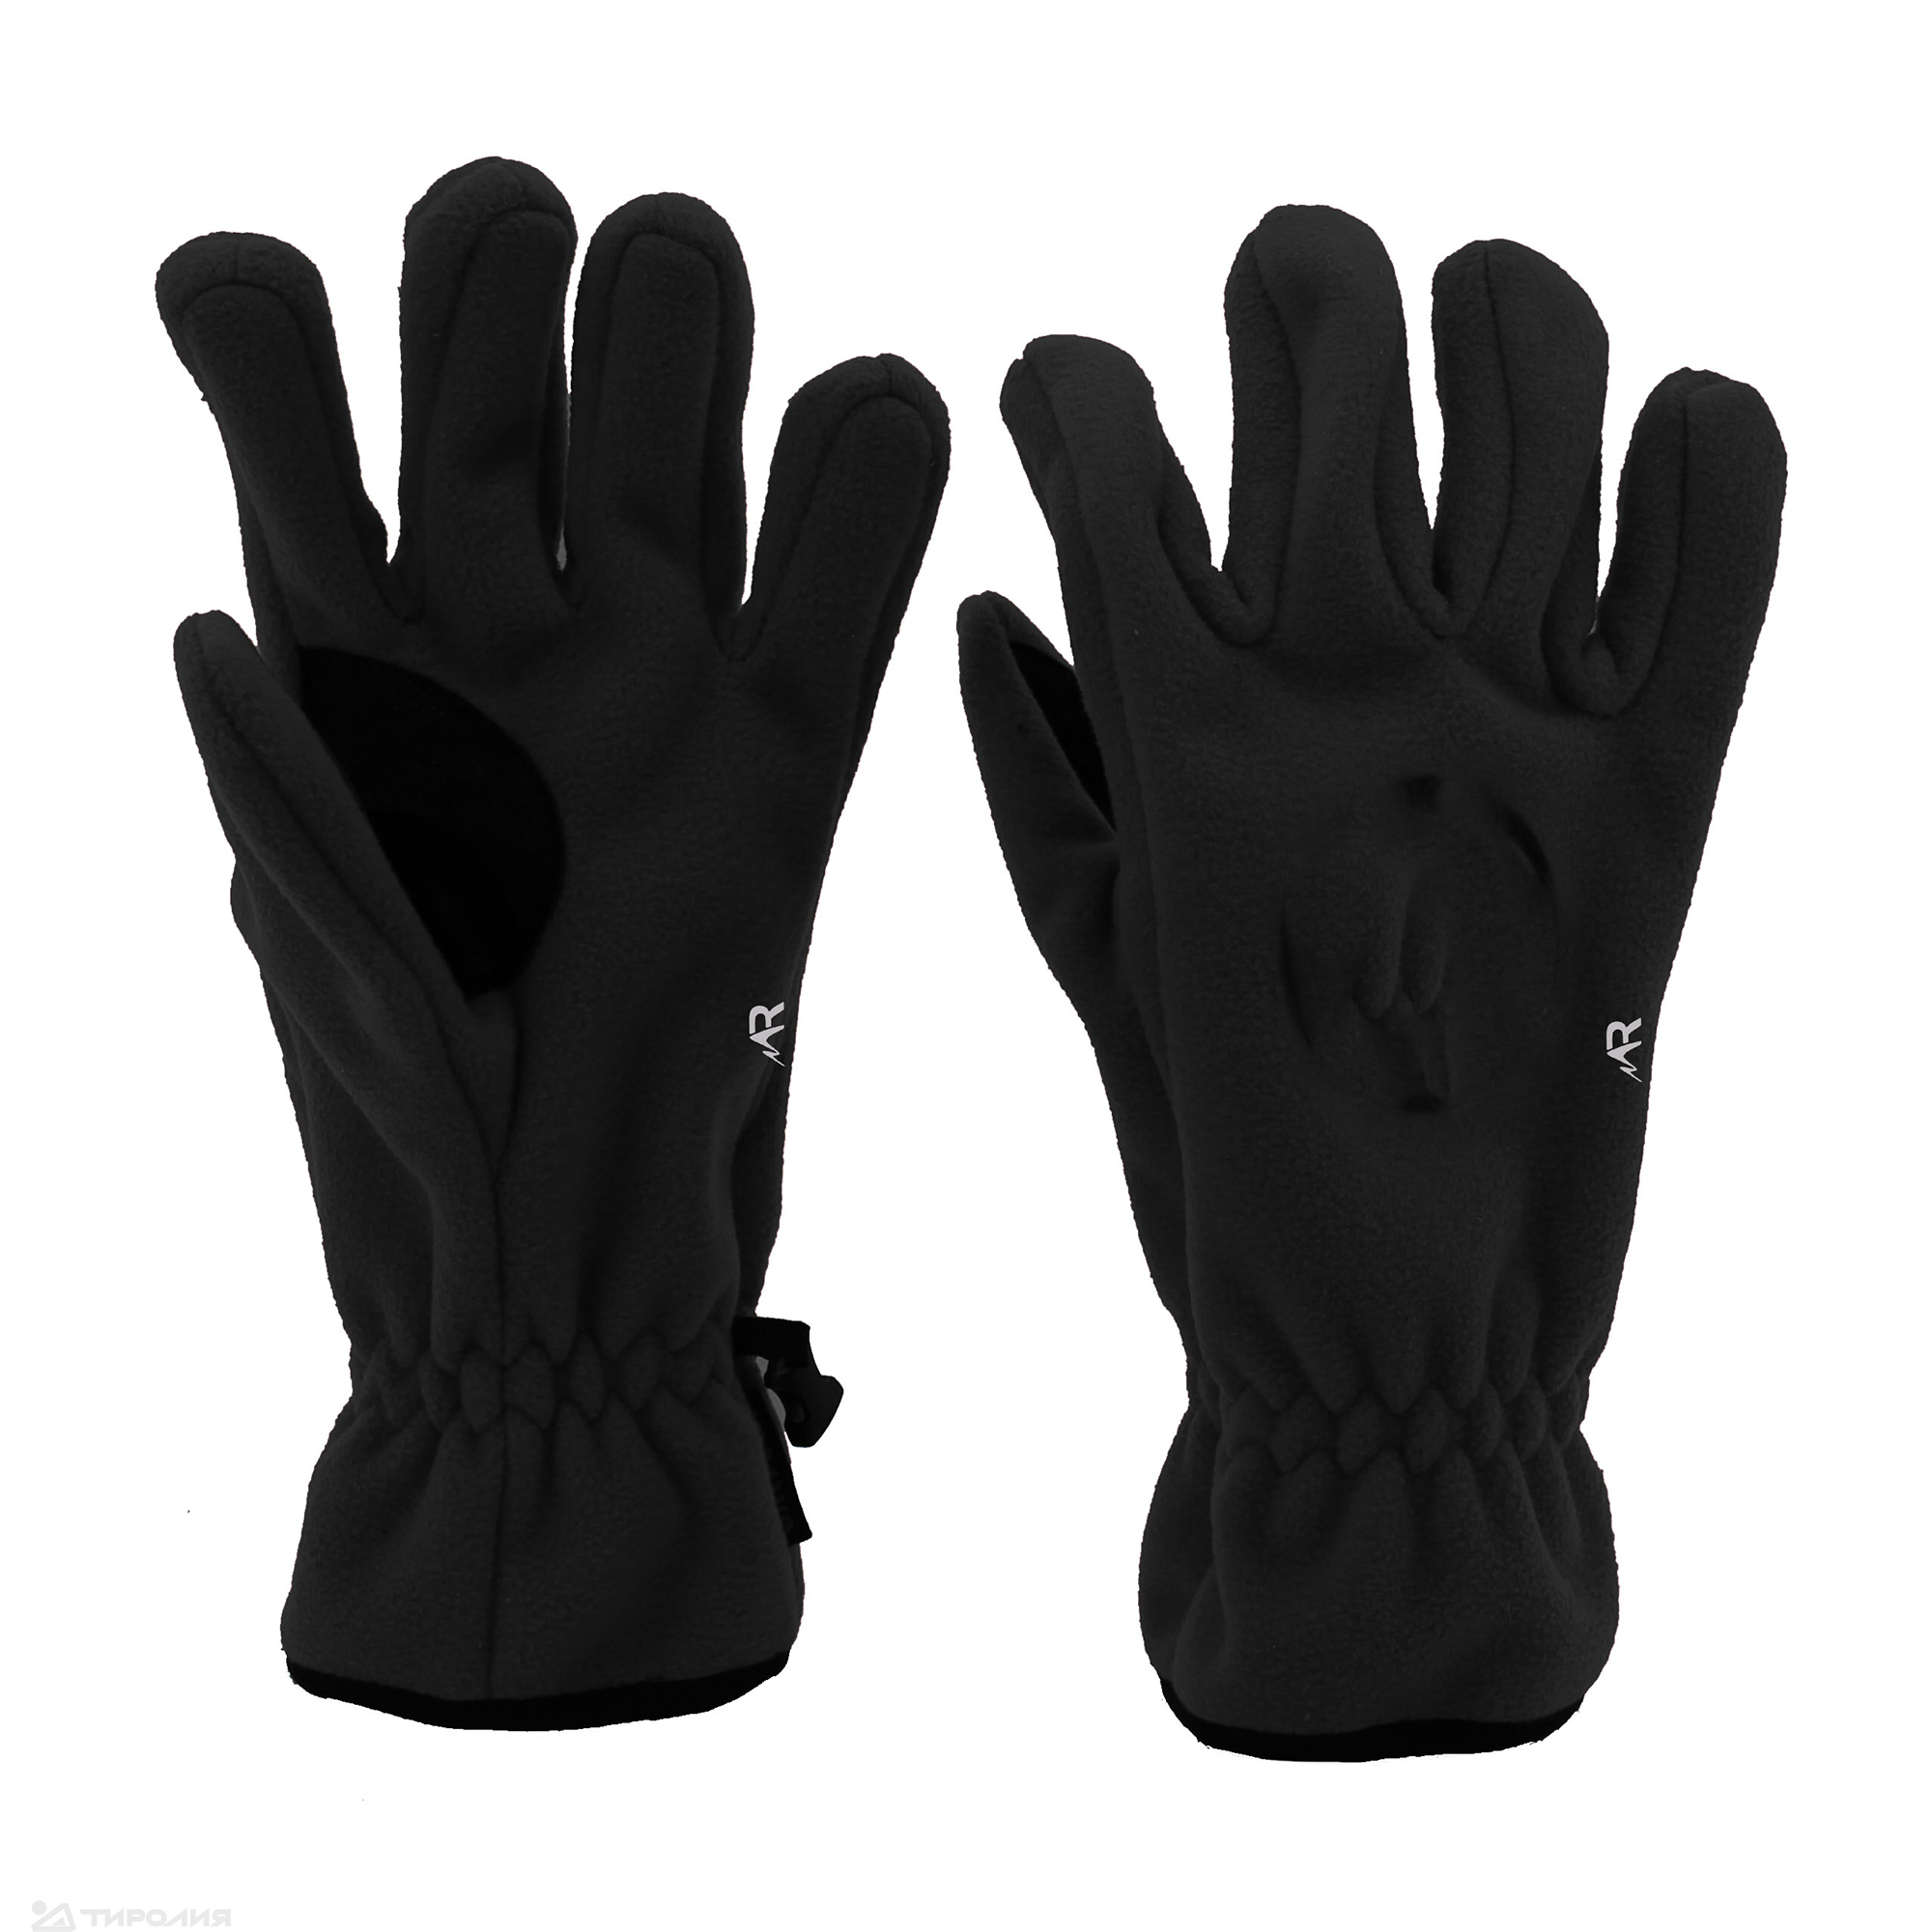 Перчатки Rosomaha Кама черные размер L, 10 RU